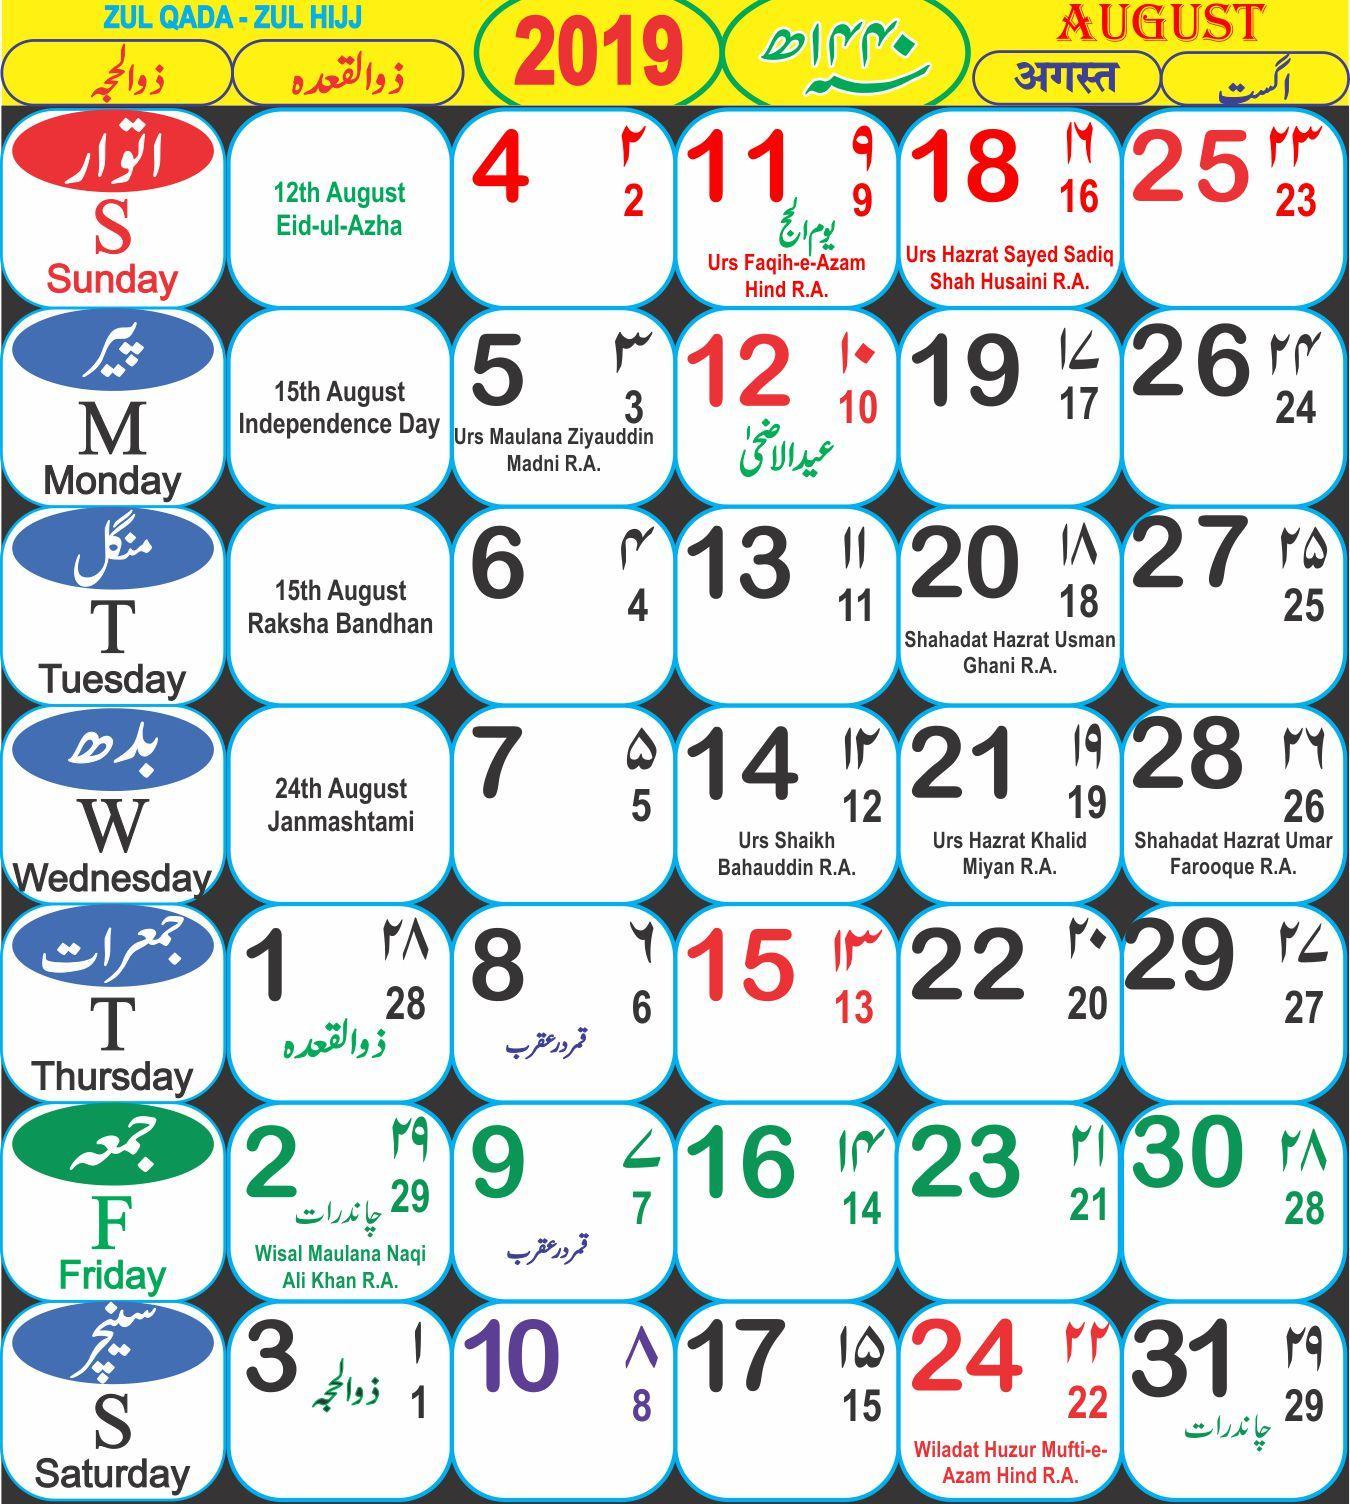 Показать мусульманский календарь. Месяцы по мусульманскому календарю. Мусульманский месяц. Название месяцев по мусульманскому календарю. Мусульманском календаре по названия годам.